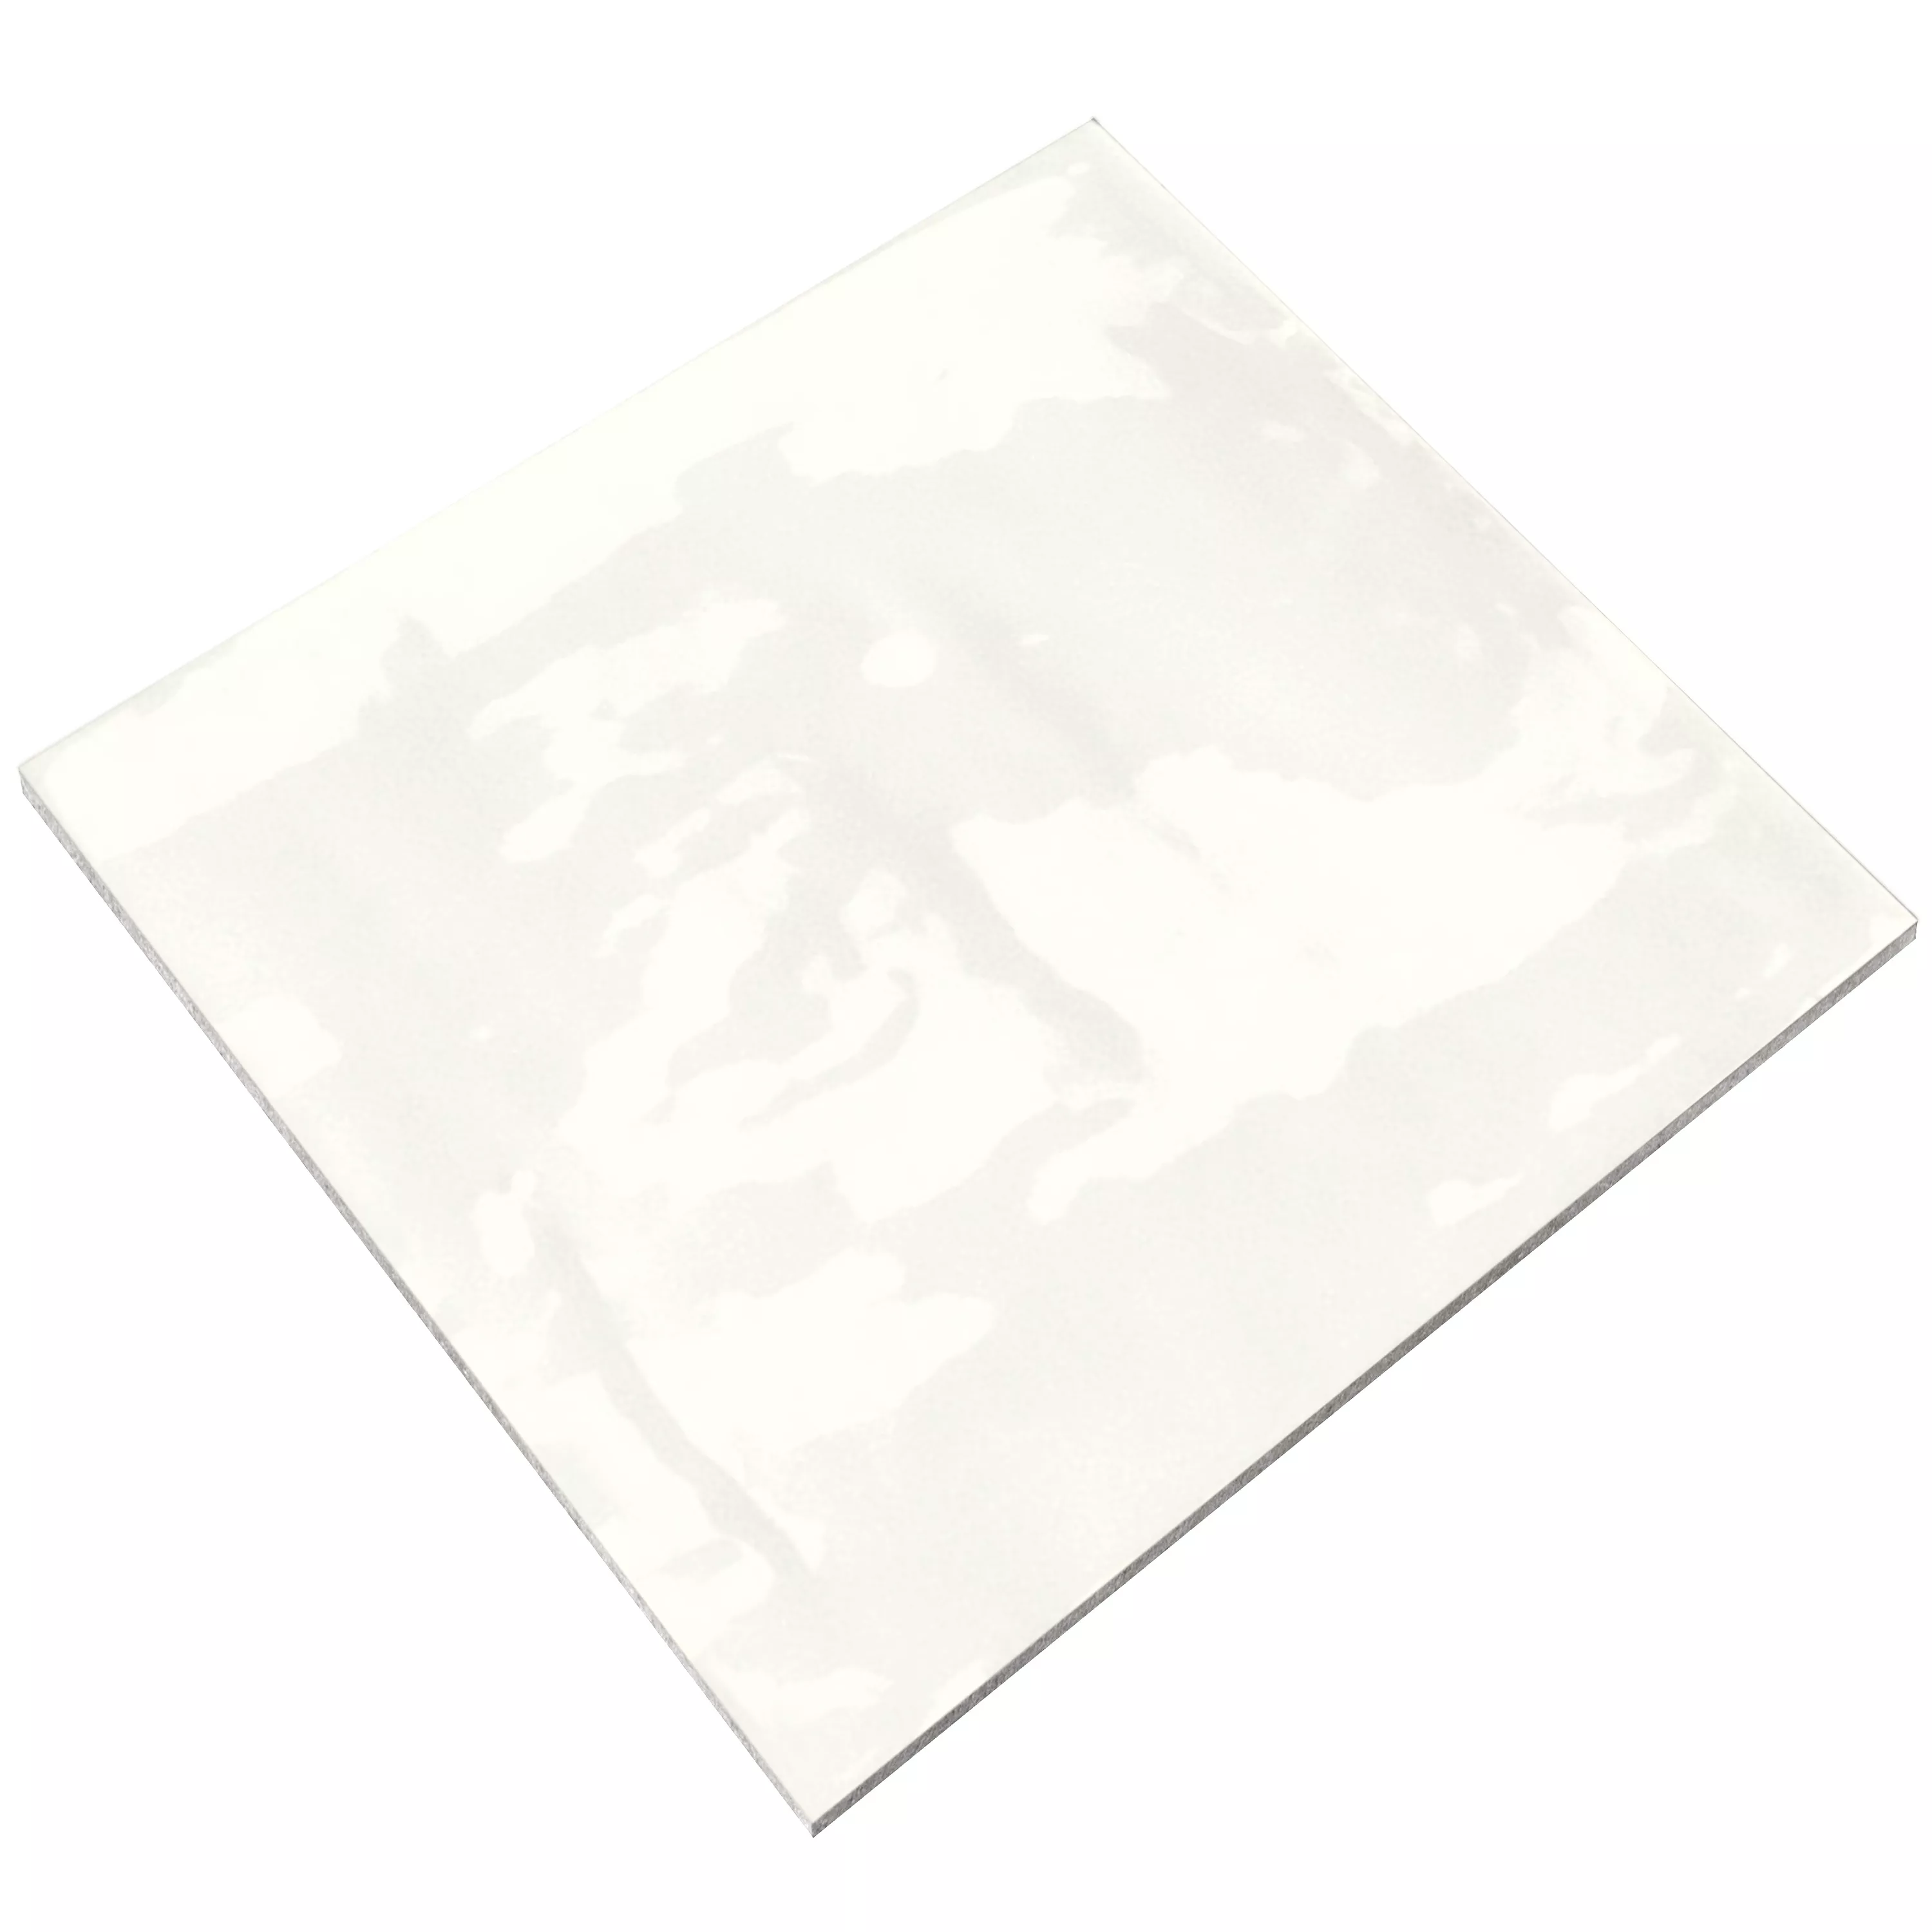 Échantillon Carrelage Mural Marbella Ondulé 15x15cm Blanc Comme Neige